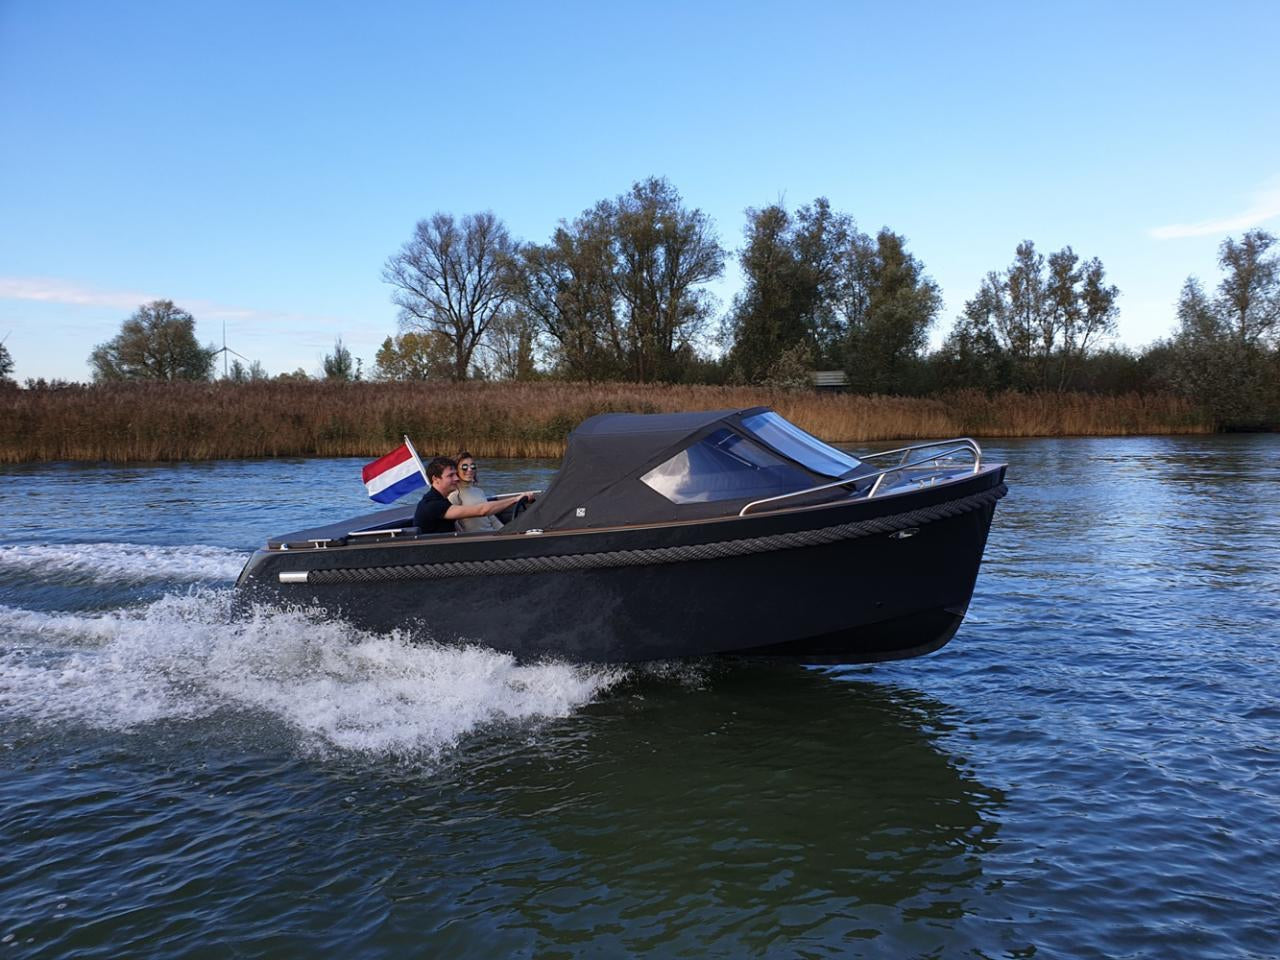 The Maxima 620 Retro MC - Base Boat Build from